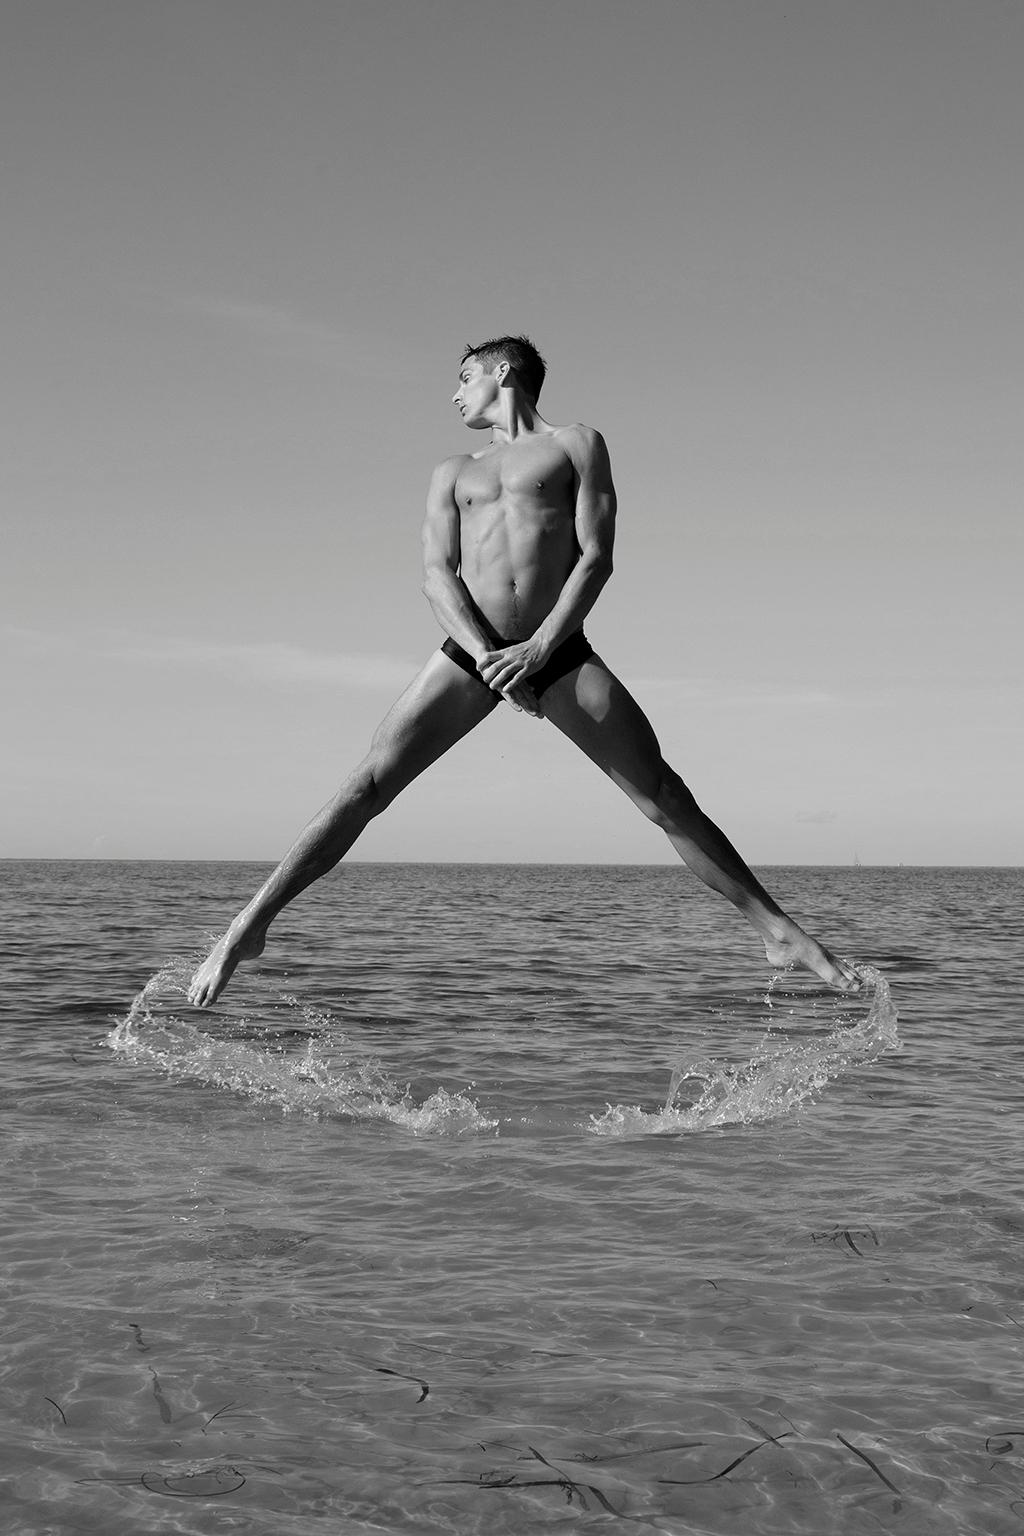 Ricky Cohete Nude Photograph – Mann springt aus dem Wasser, Zwei. Figurative Fotografie in limitierter Auflage von B & W